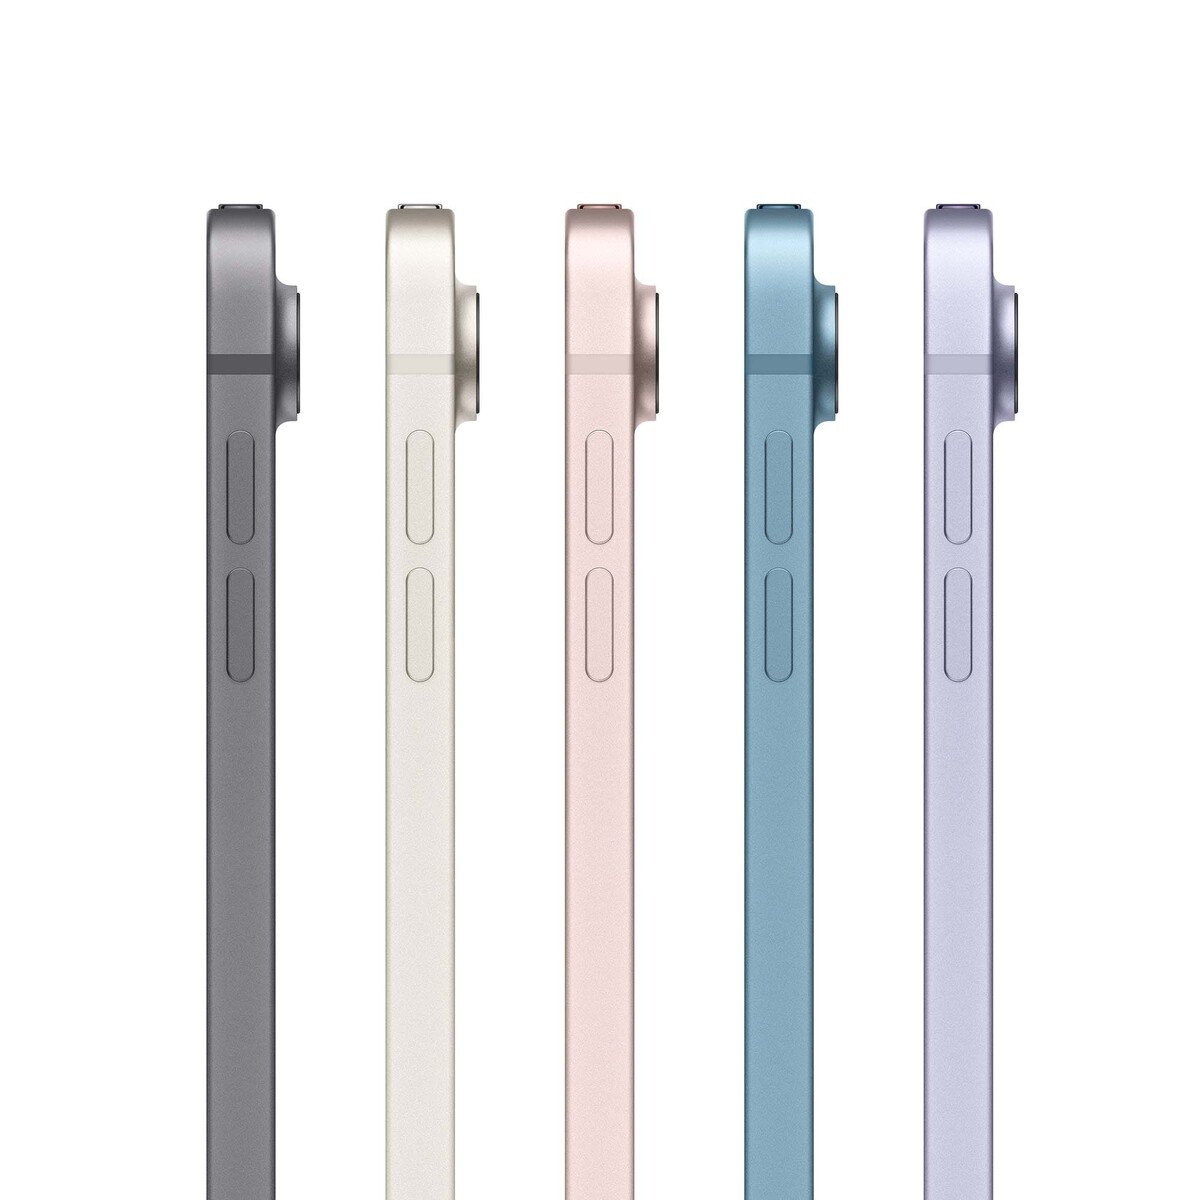 Apple iPad Air (2022) 10.9-inchch Wi-Fi + Cellular(5G) 256GB Space Gray